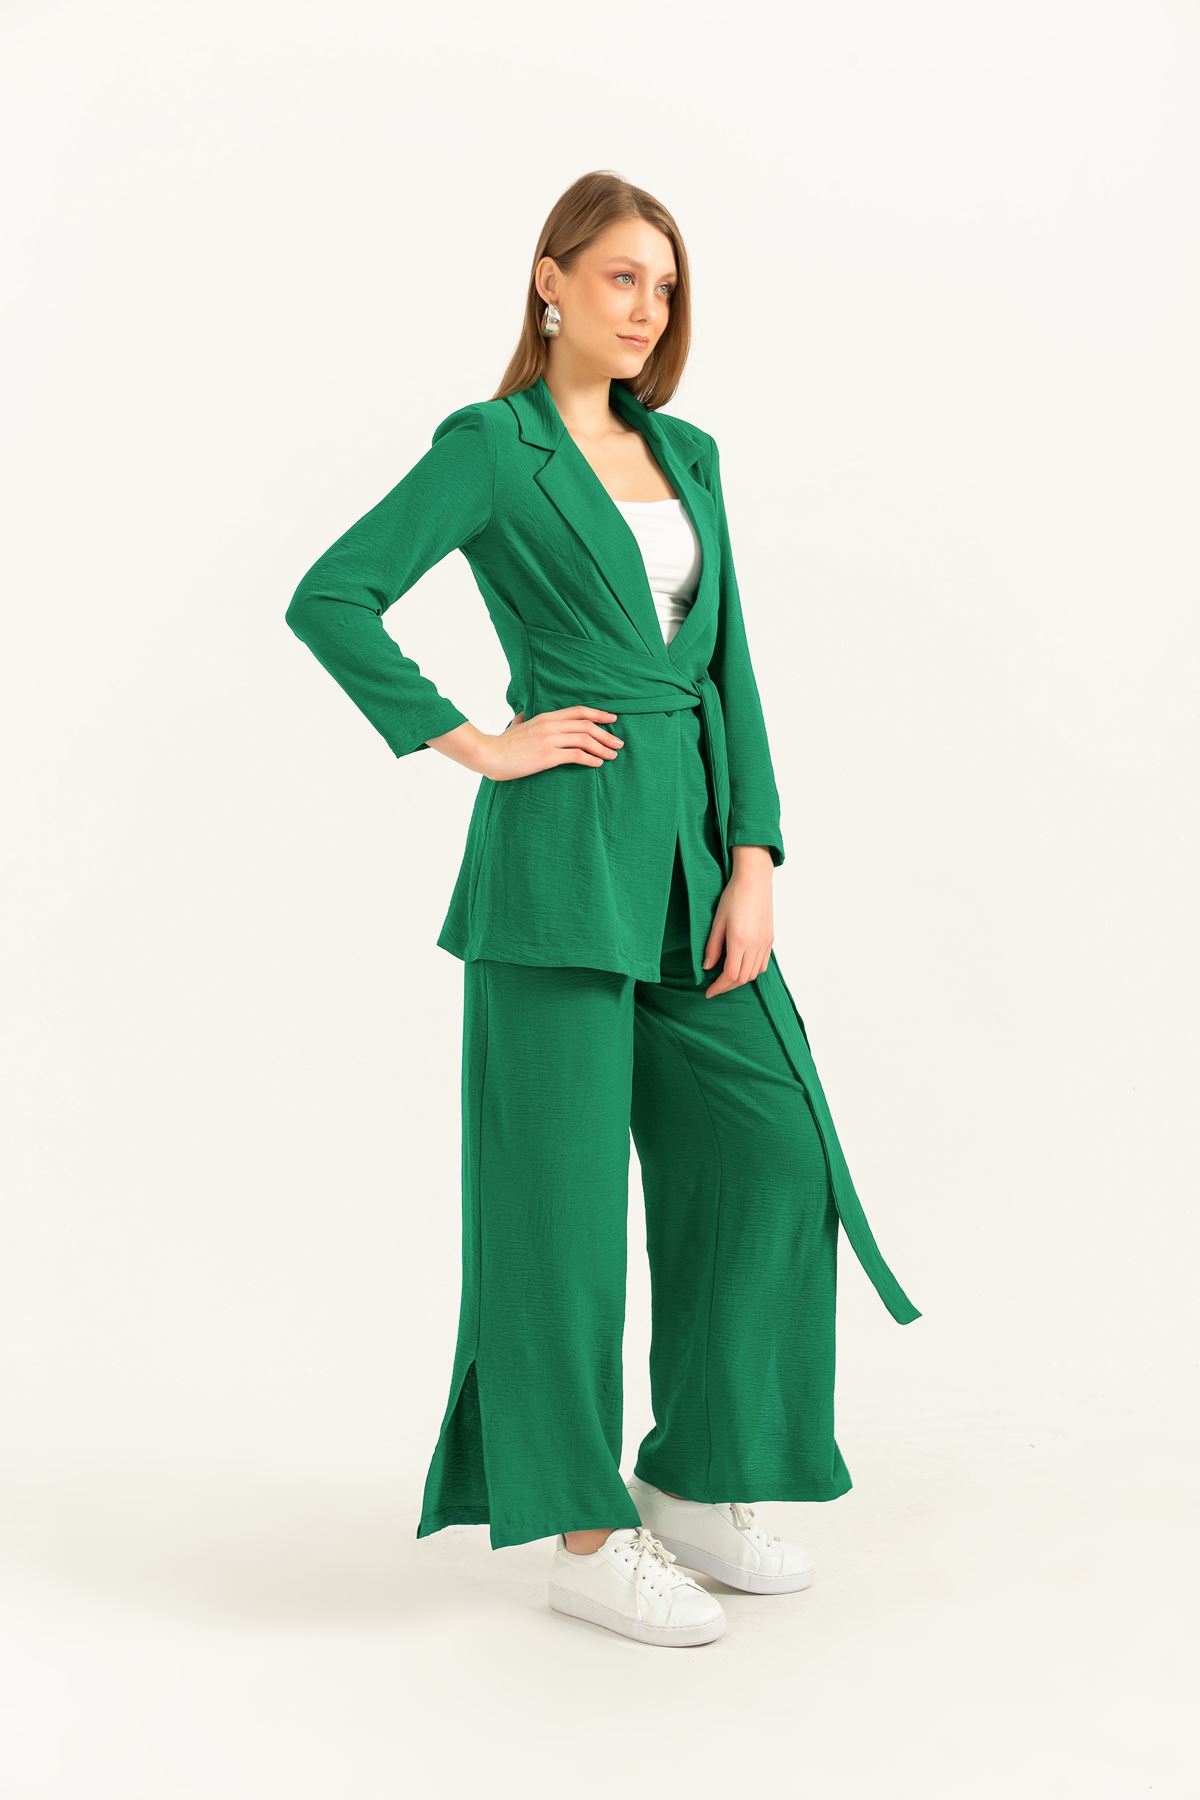 Aerobin Kumaş Uzun Kollu Rahat Kalıp Önü Bağlamalı Kadın Ceket-Zümrüt Yeşil